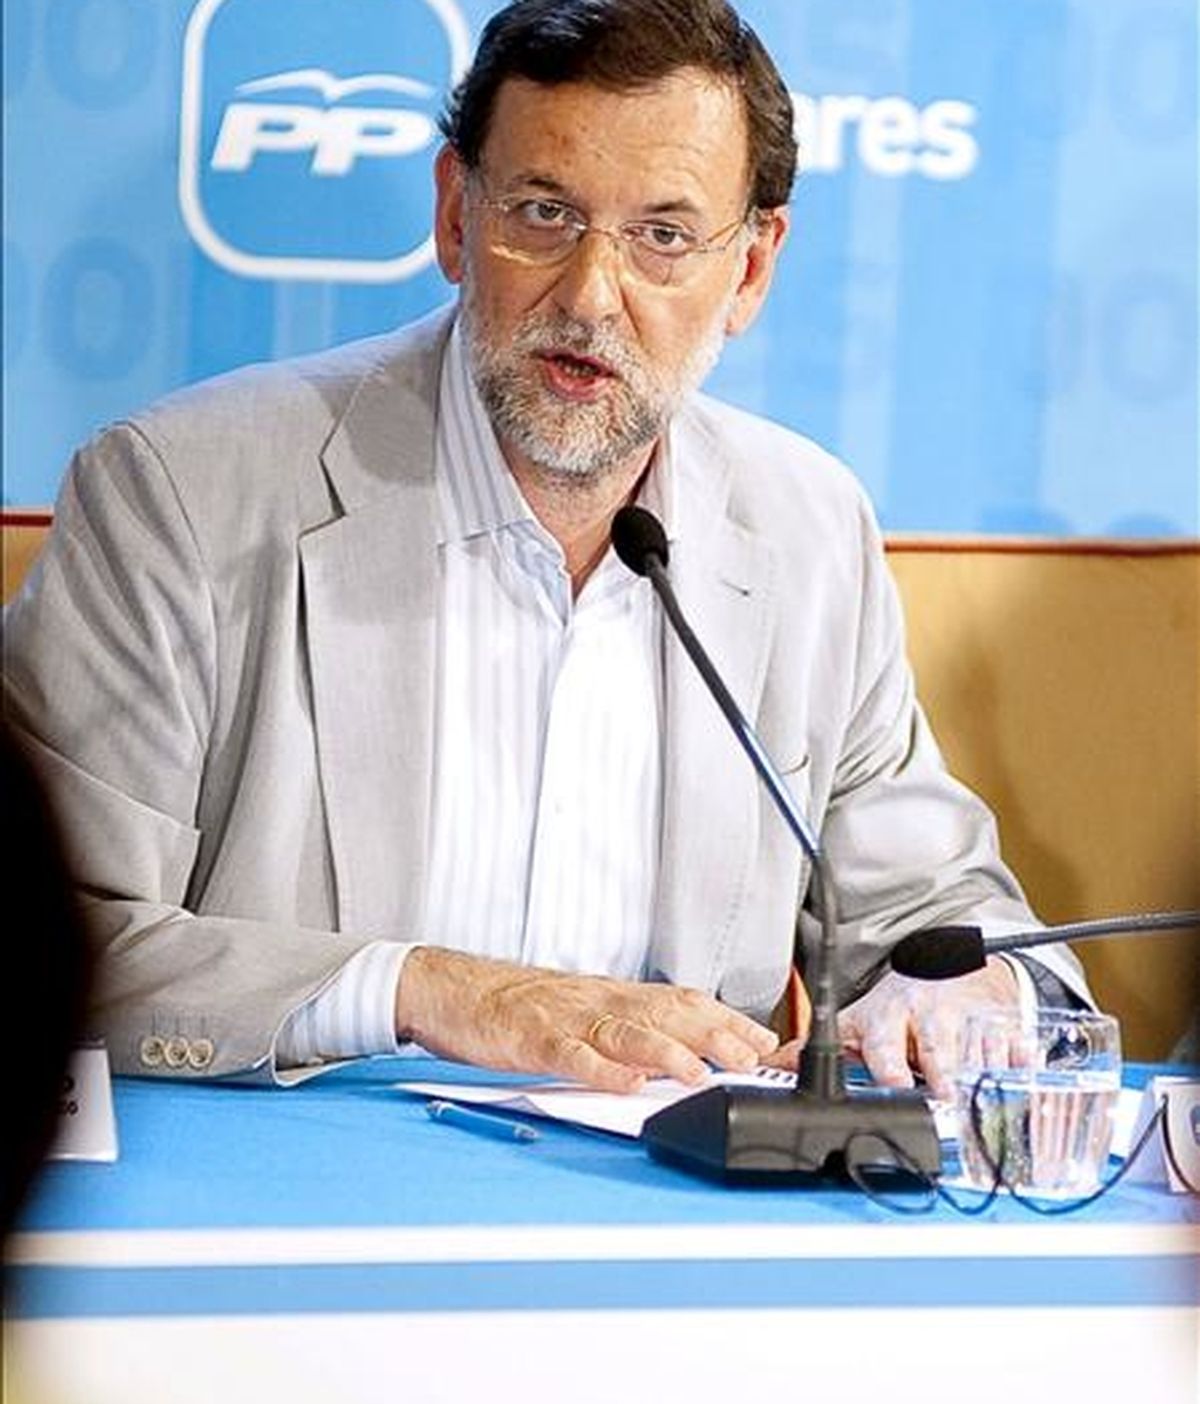 El presidente del PP, Mariano Rajoy, durante la reunión del Comité Ejecutivo de su partido en Castilla-La Mancha. EFE